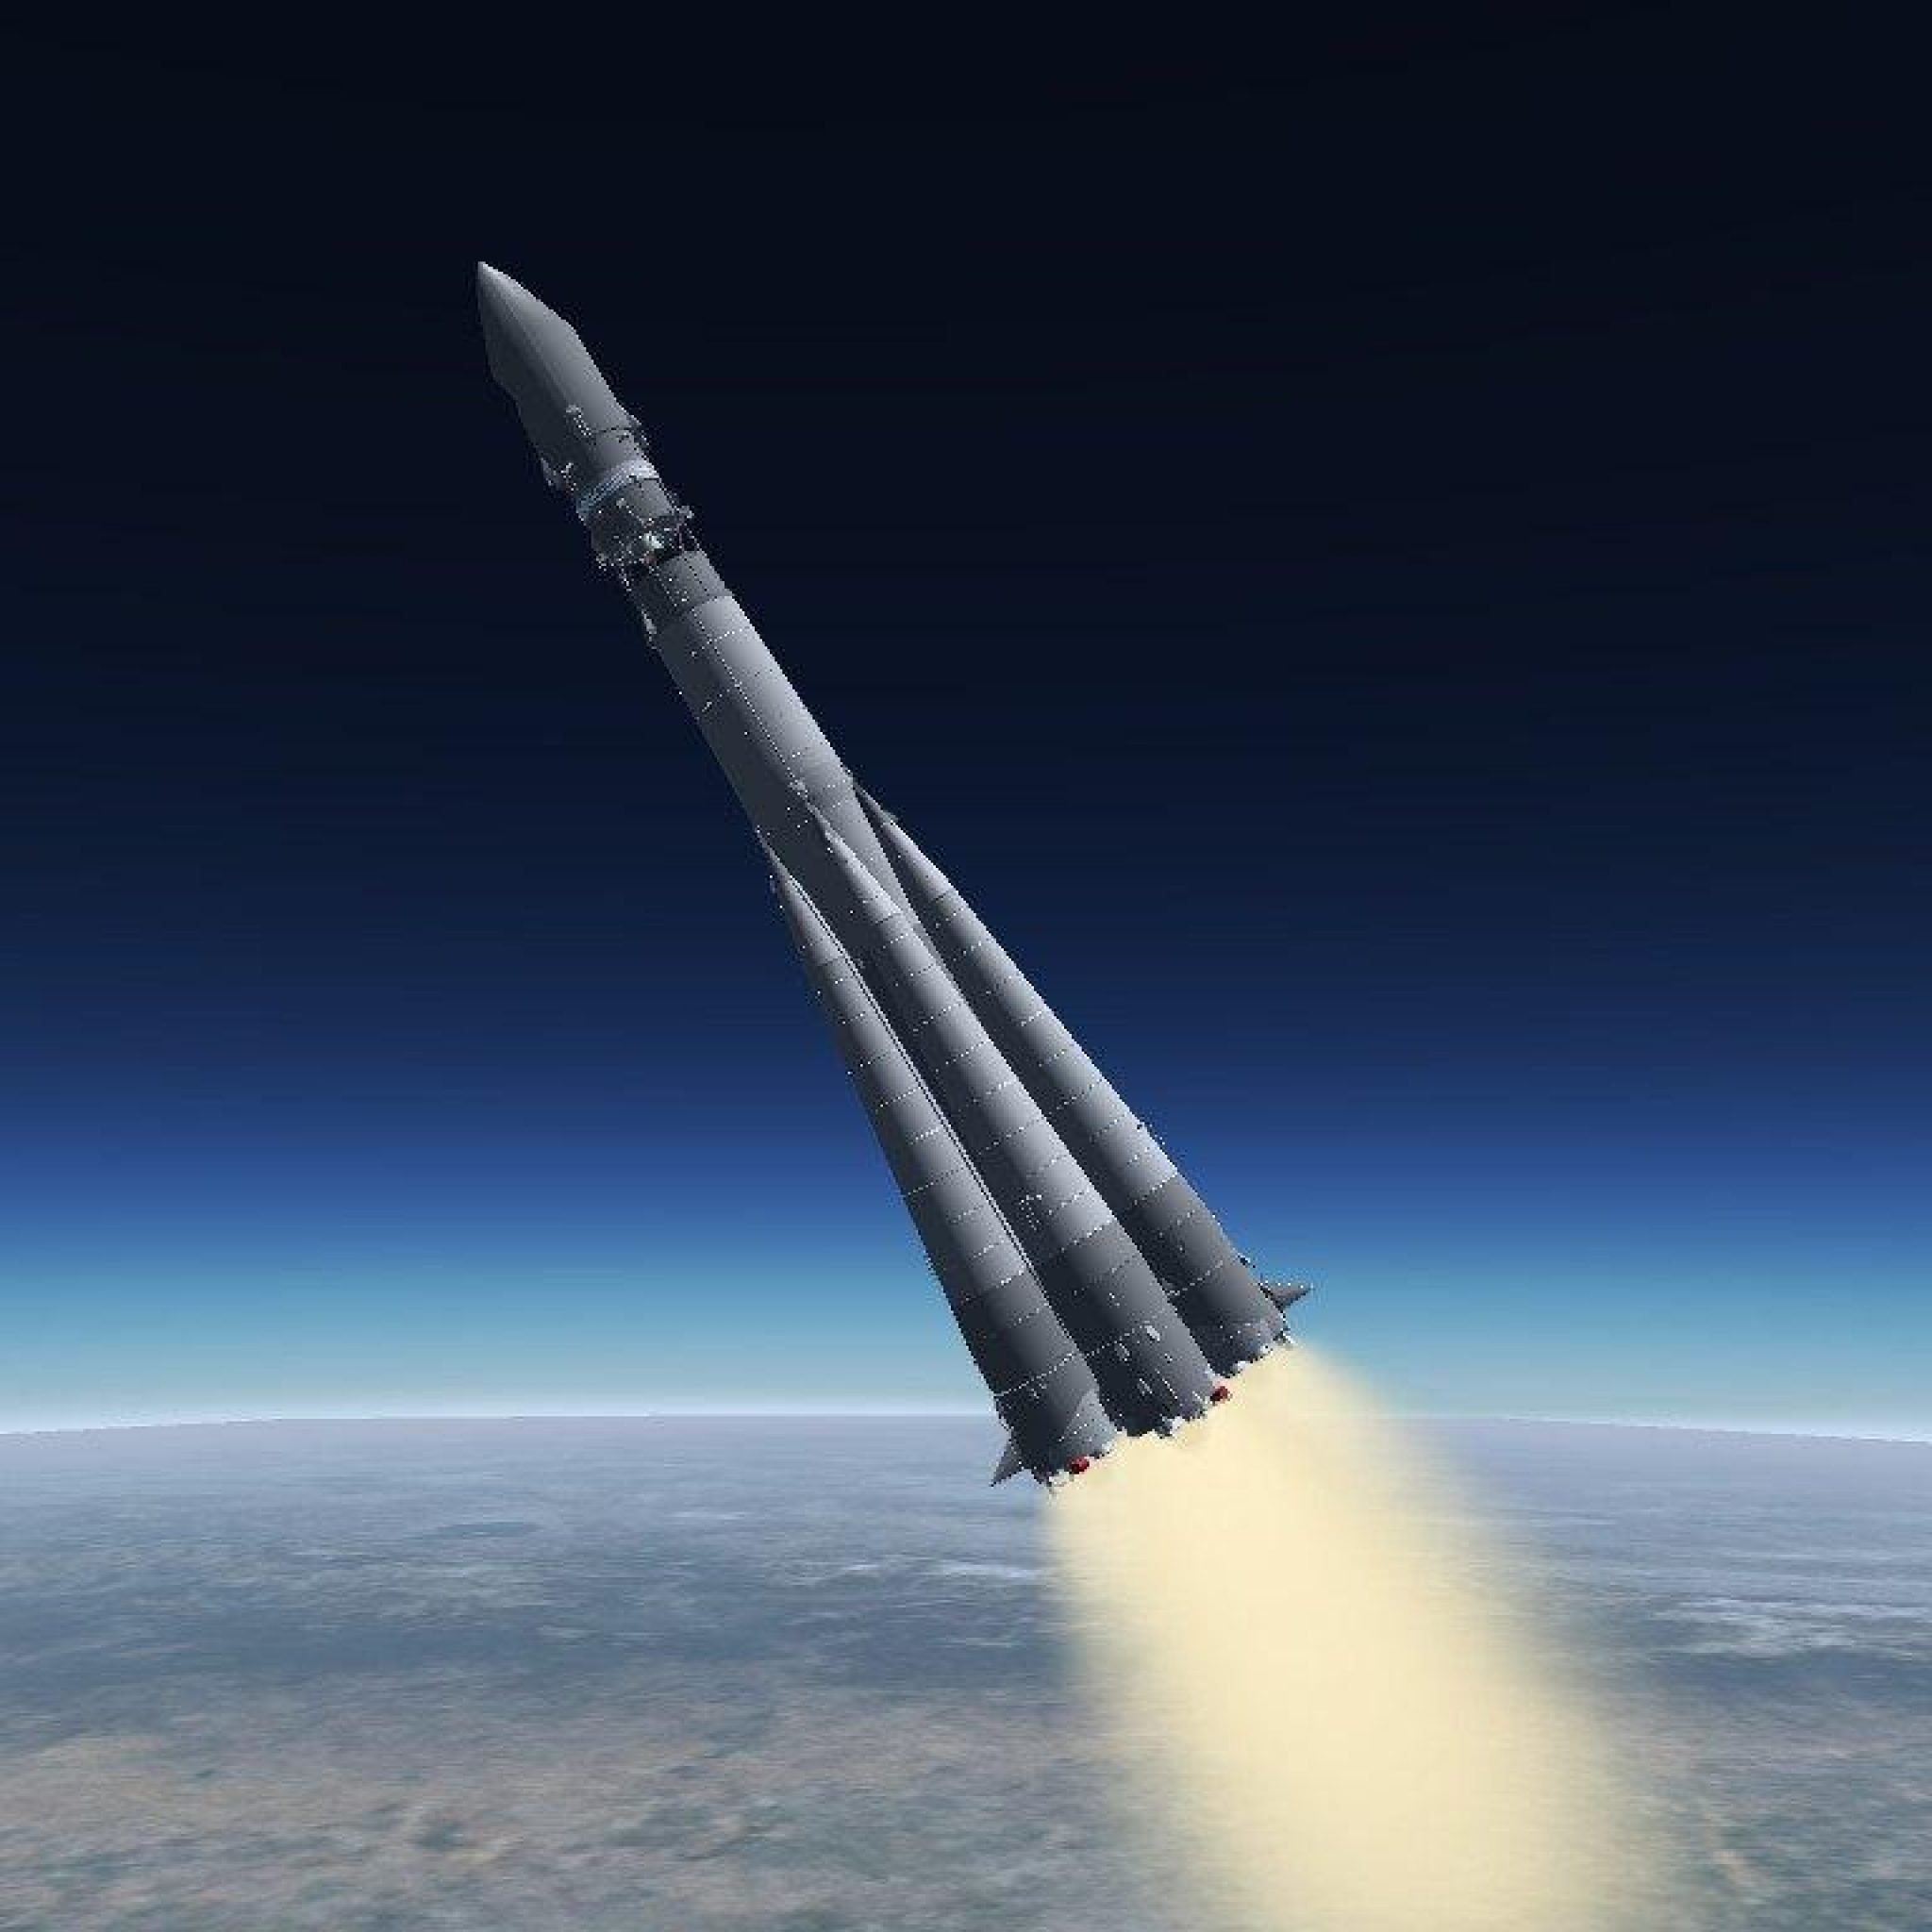 Фото ракеты гагарина. Ракета Восток 1. Ракетоноситель Восток 1. Ракета Восток 1 Гагарин. Ракета Юрия Гагарина Восток-1.